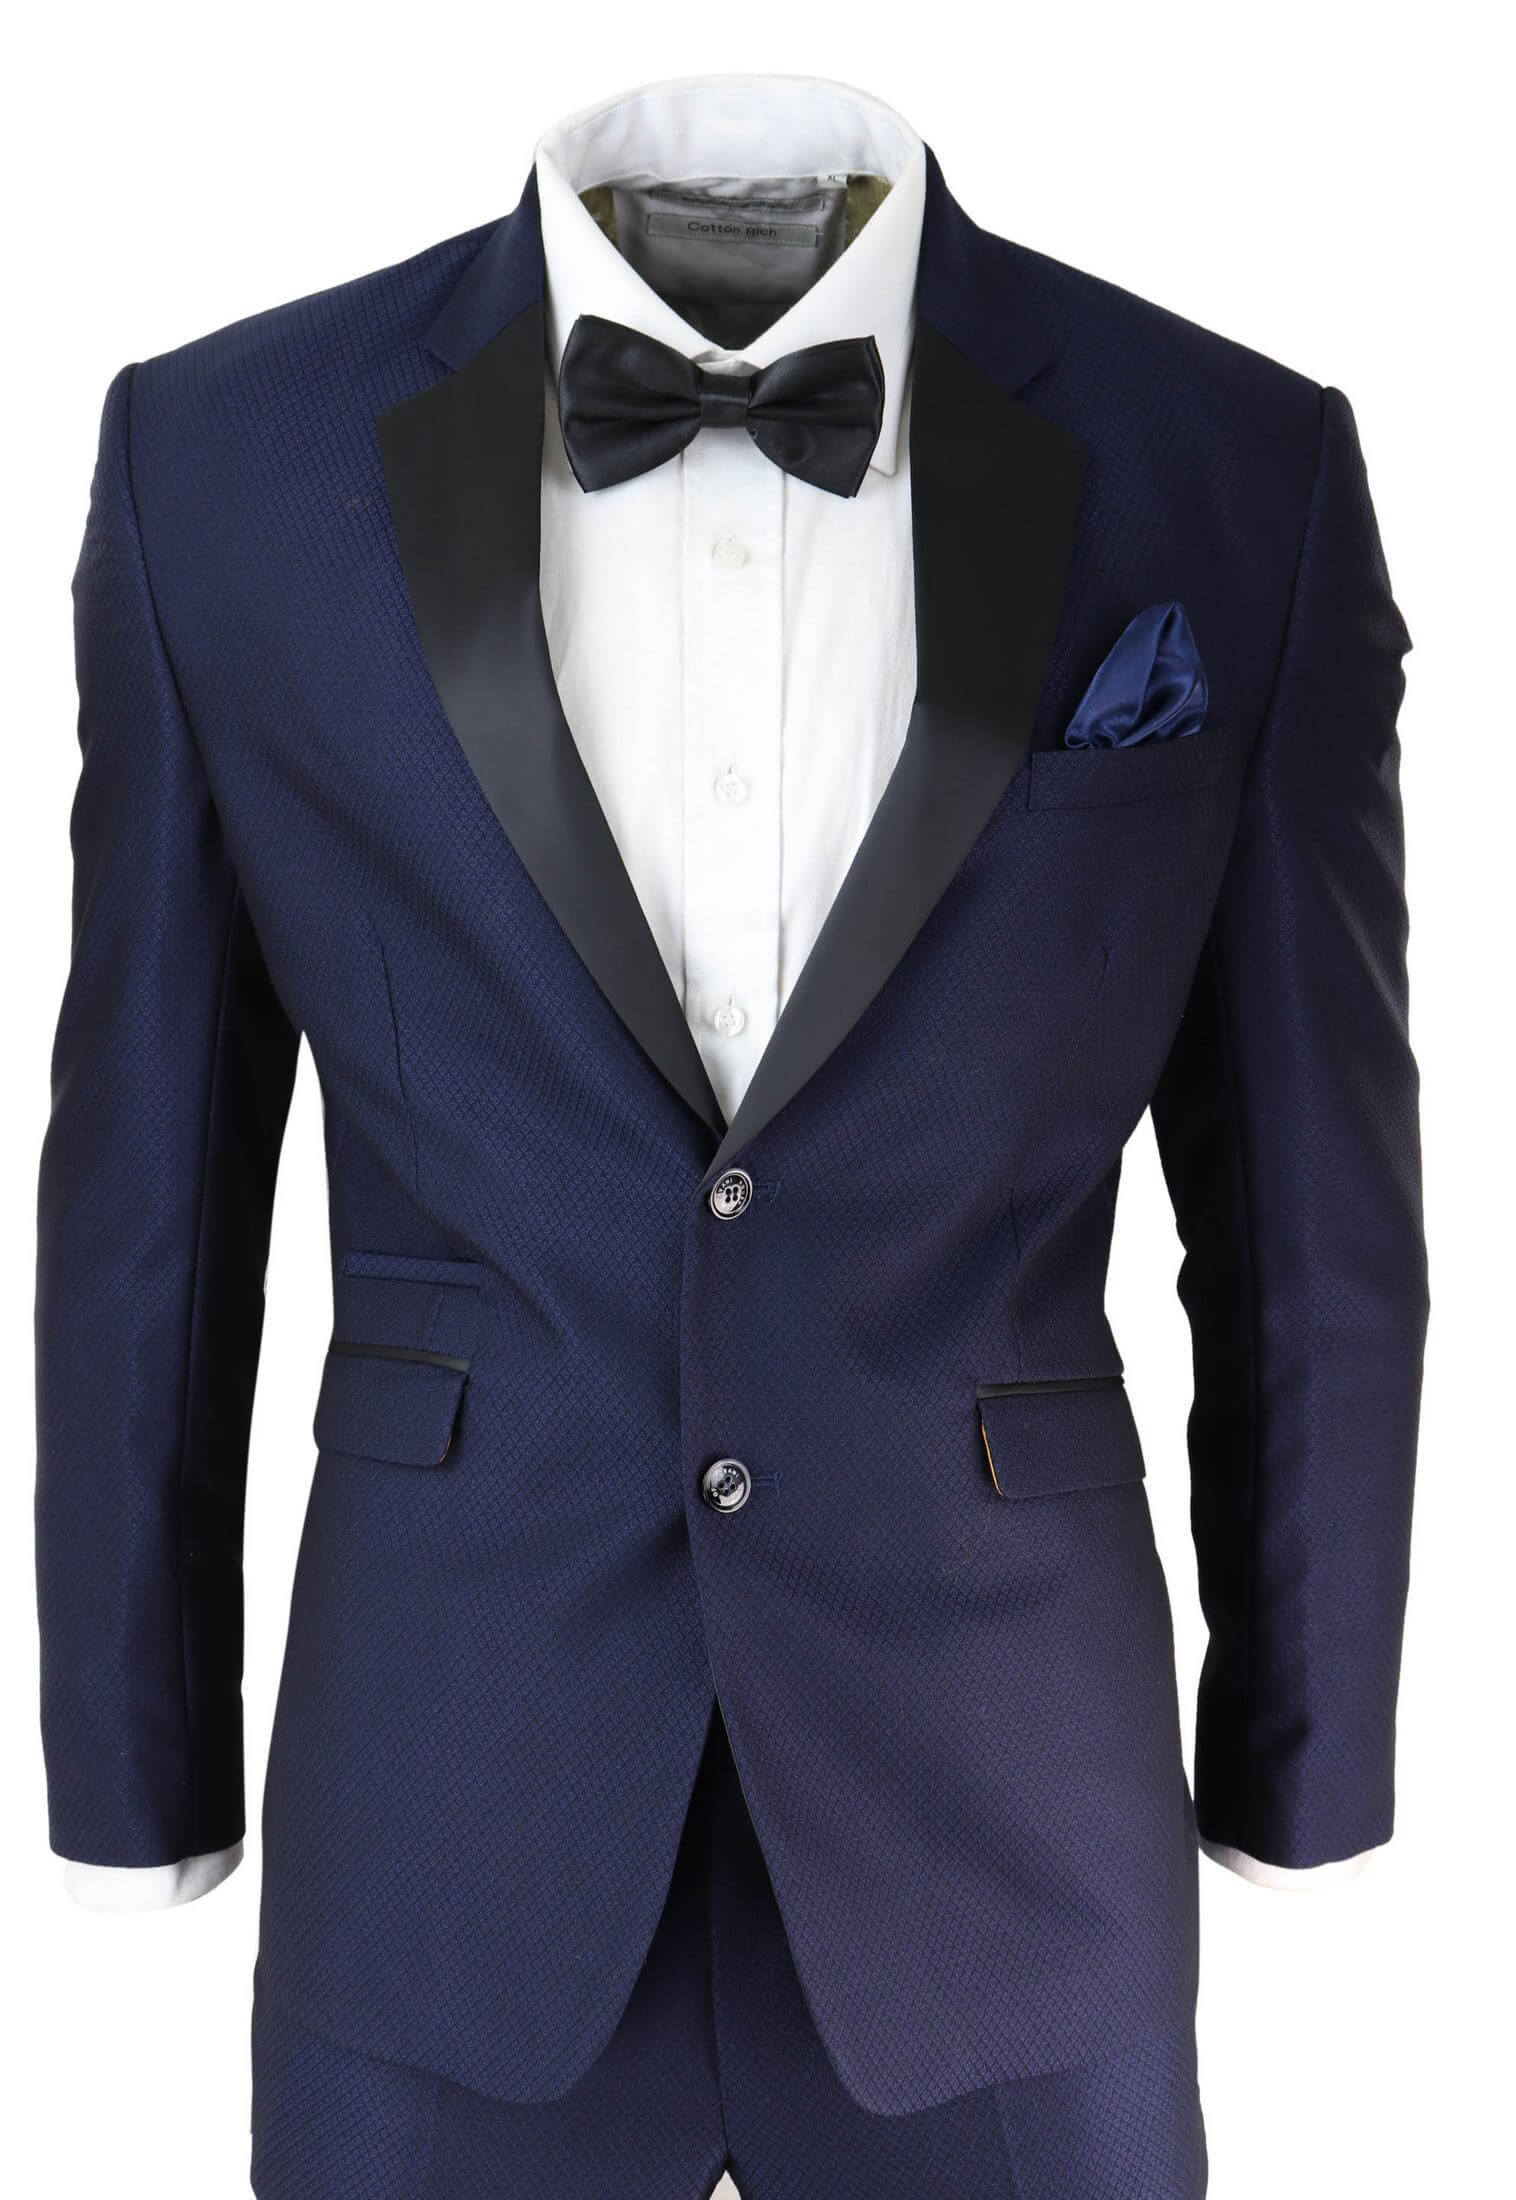 Mens Blue Tuxedo Dinner Suit: Buy Online - Happy Gentleman